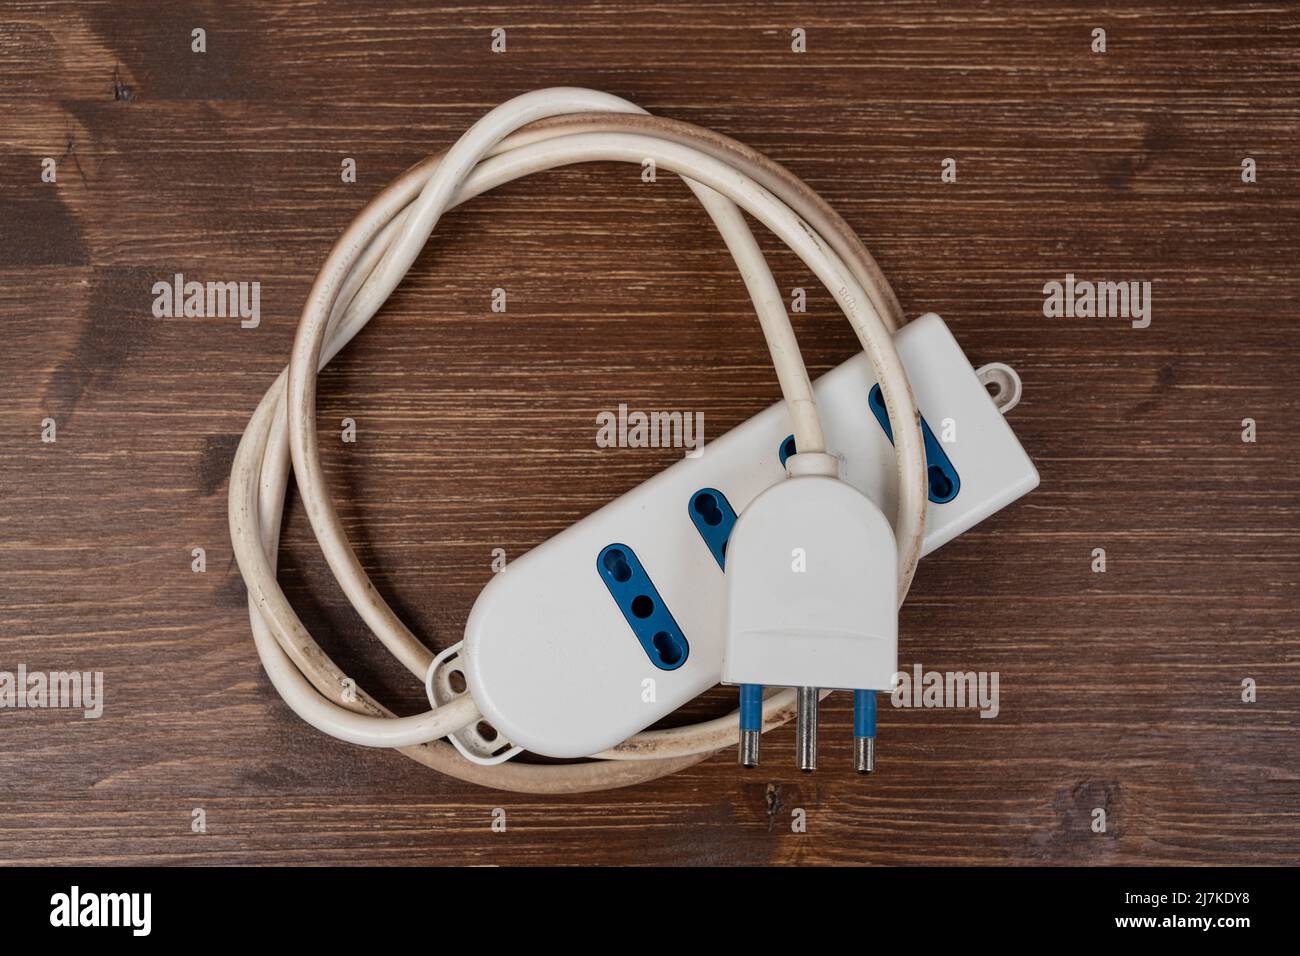 una prolunga elettrica arrotolata su una superficie di legno Foto stock -  Alamy